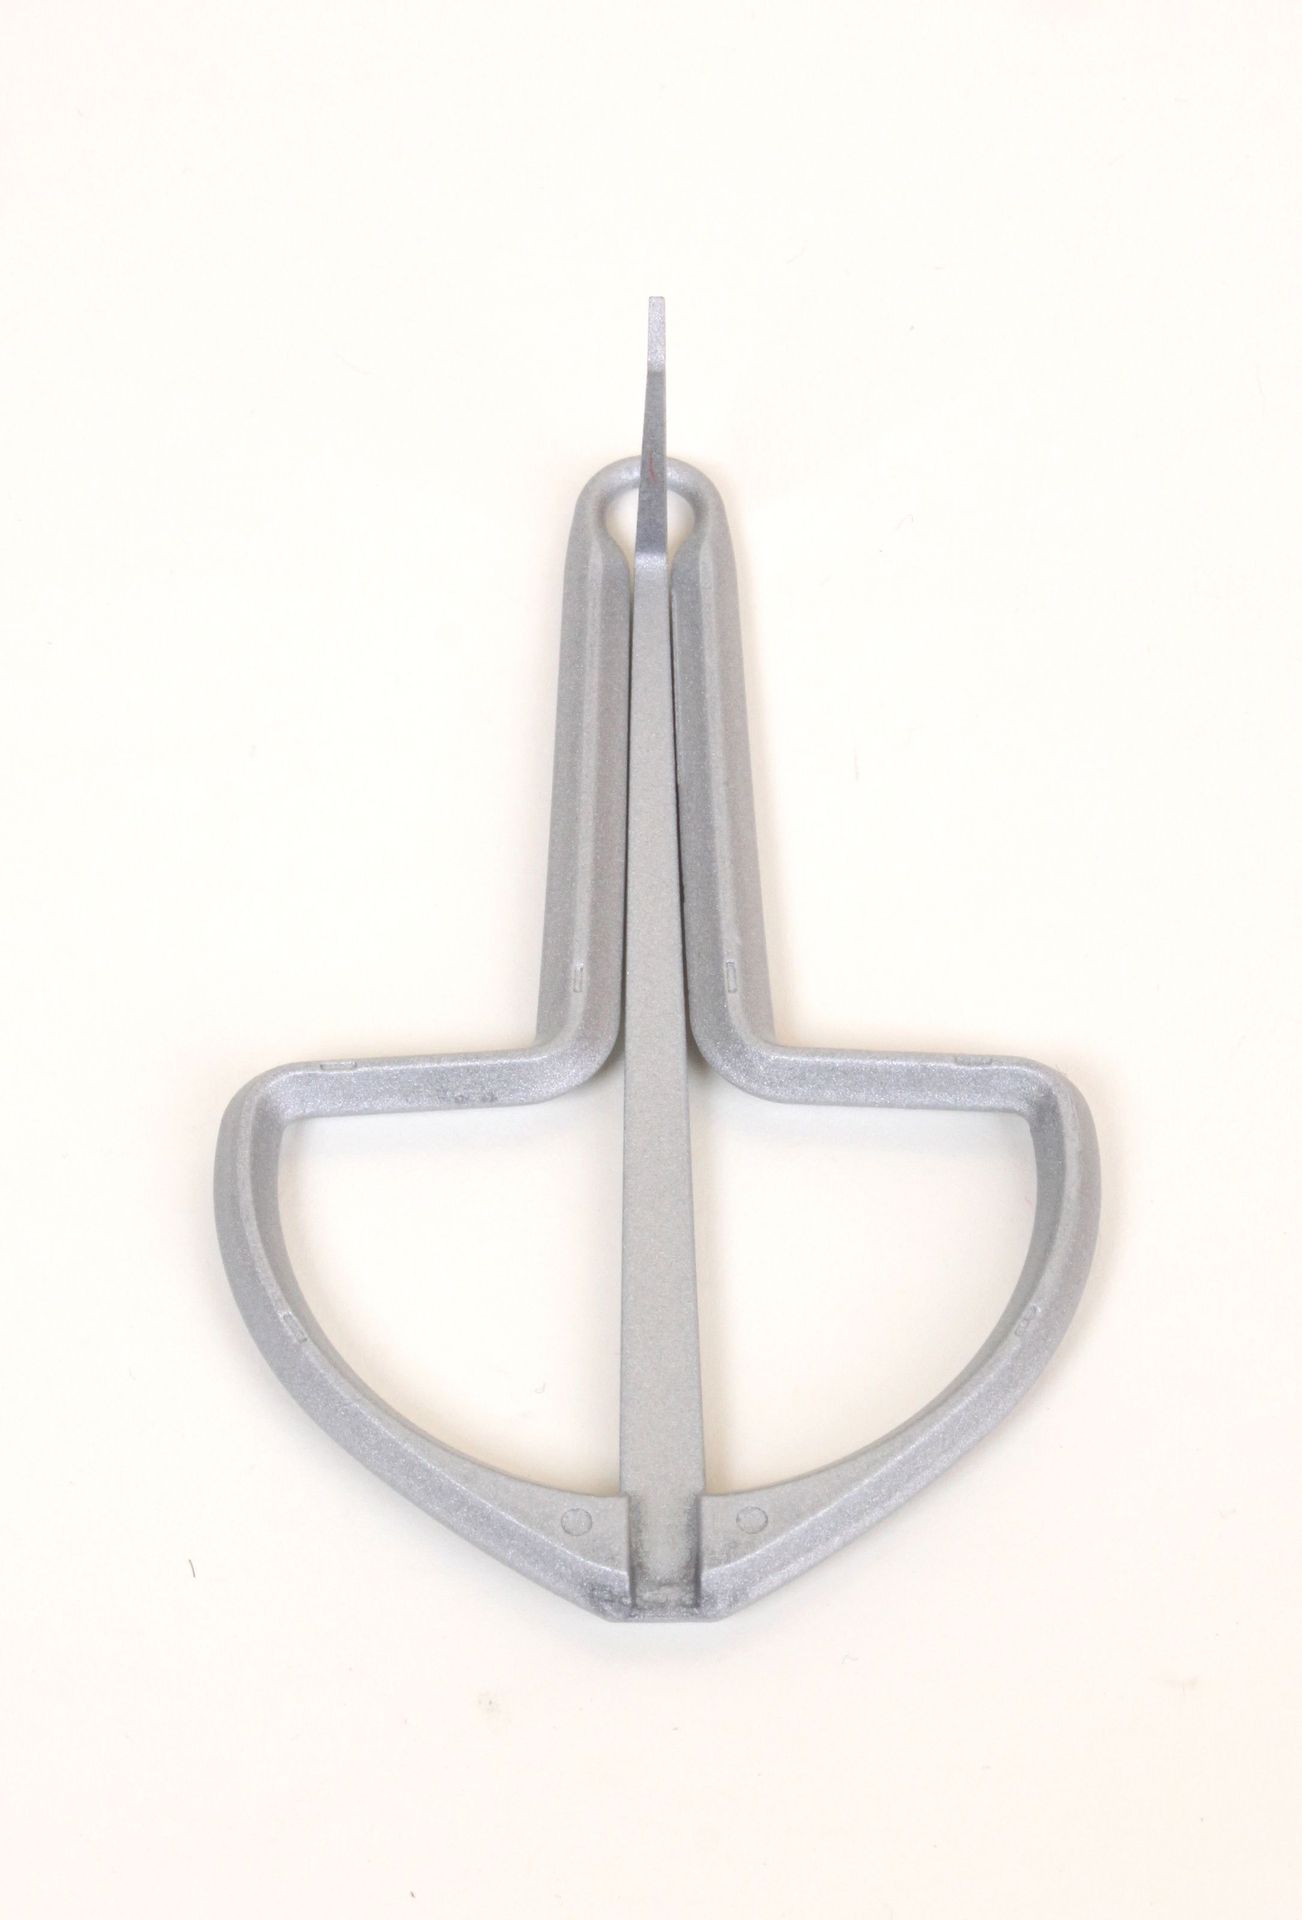 Migma Maultrommel mittel ca. 85 x 55 mm  Metall, grau/ silberfarbig